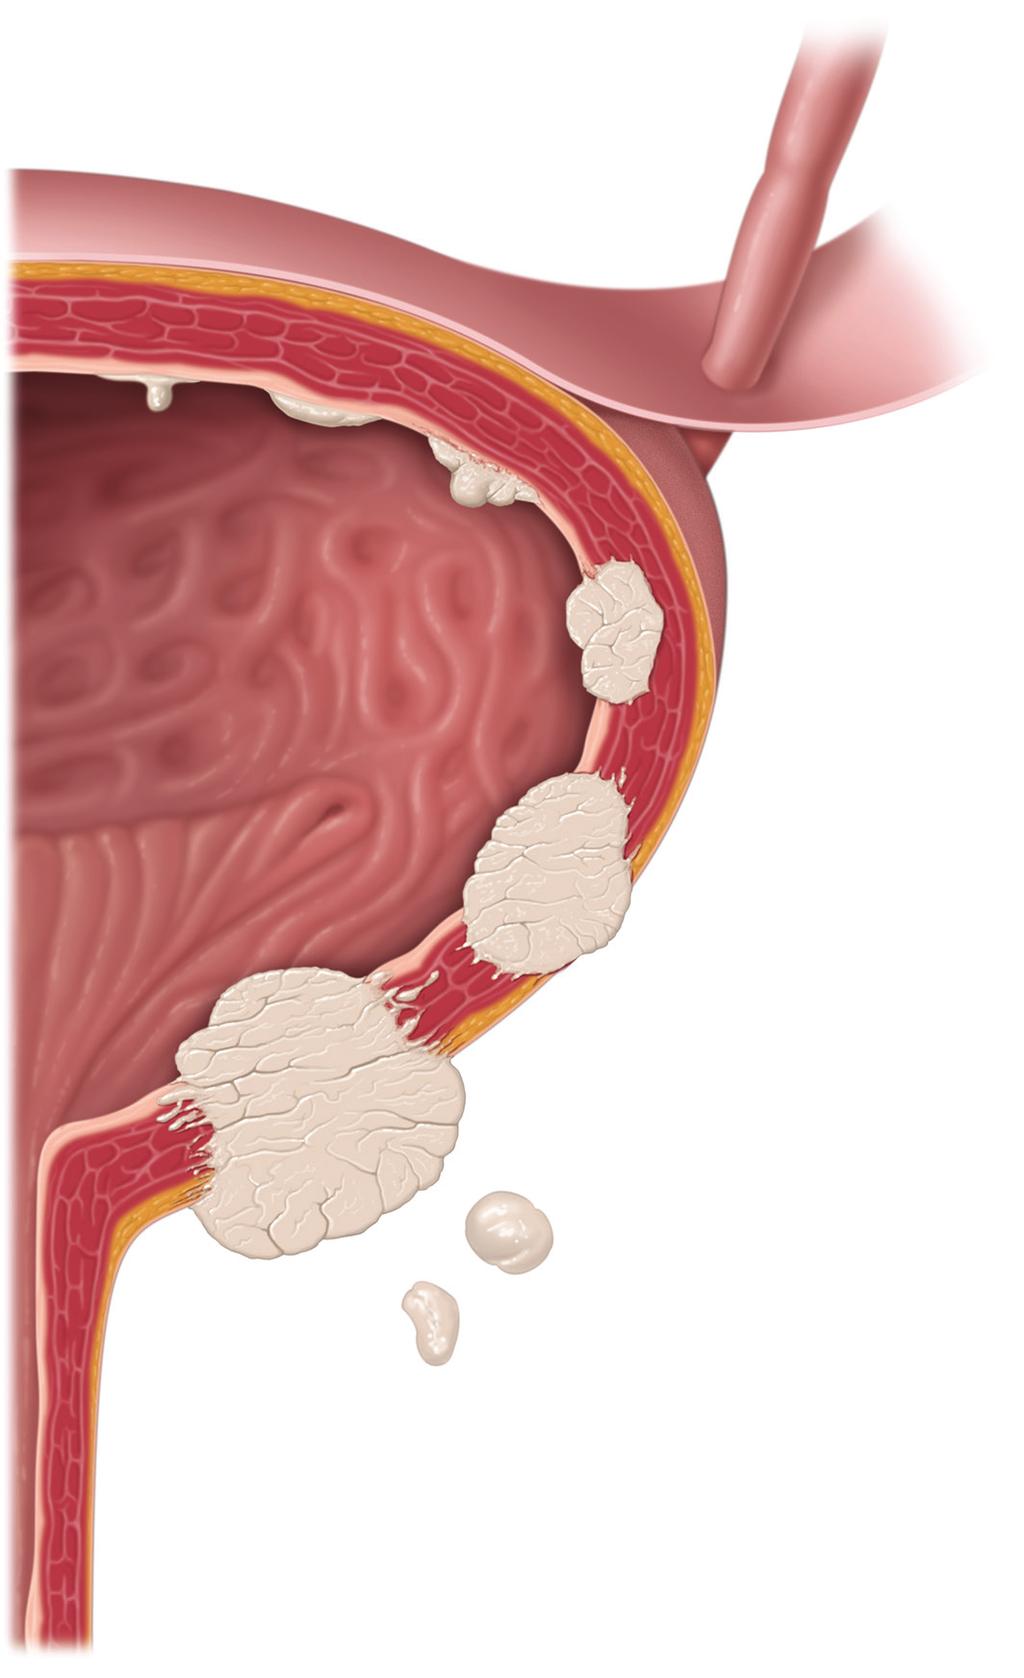 T1-Tumoren haben sich auf das Bindegewebe unter der Blasenschleimhaut ausgebreitet, sind aber nicht in die Muskulatur der Blasenwand eingewachsen.